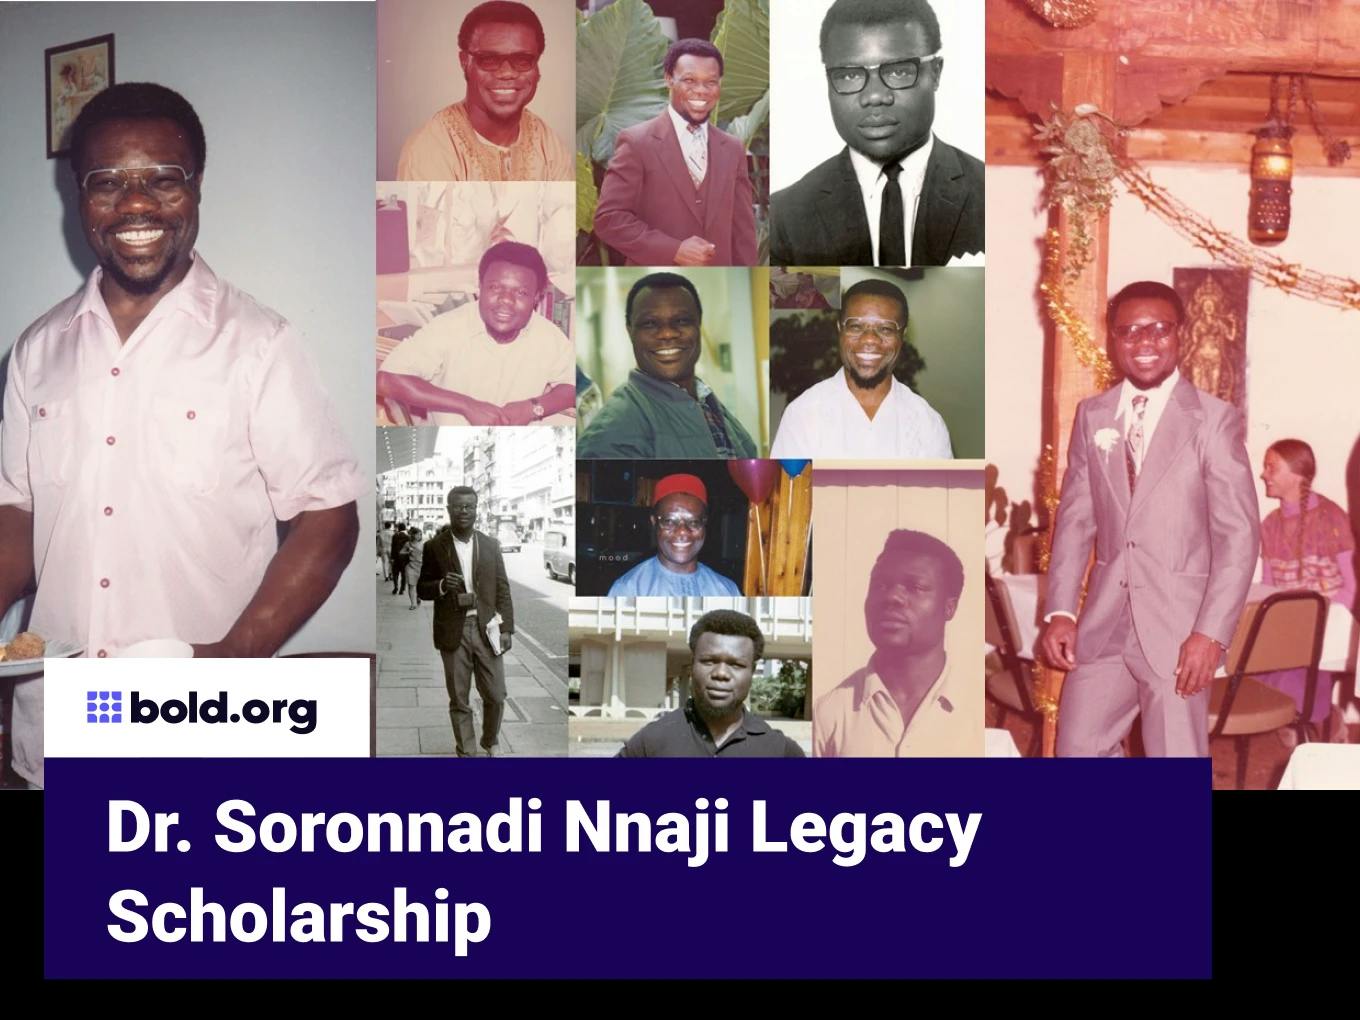 Dr. Soronnadi Nnaji Legacy Scholarship